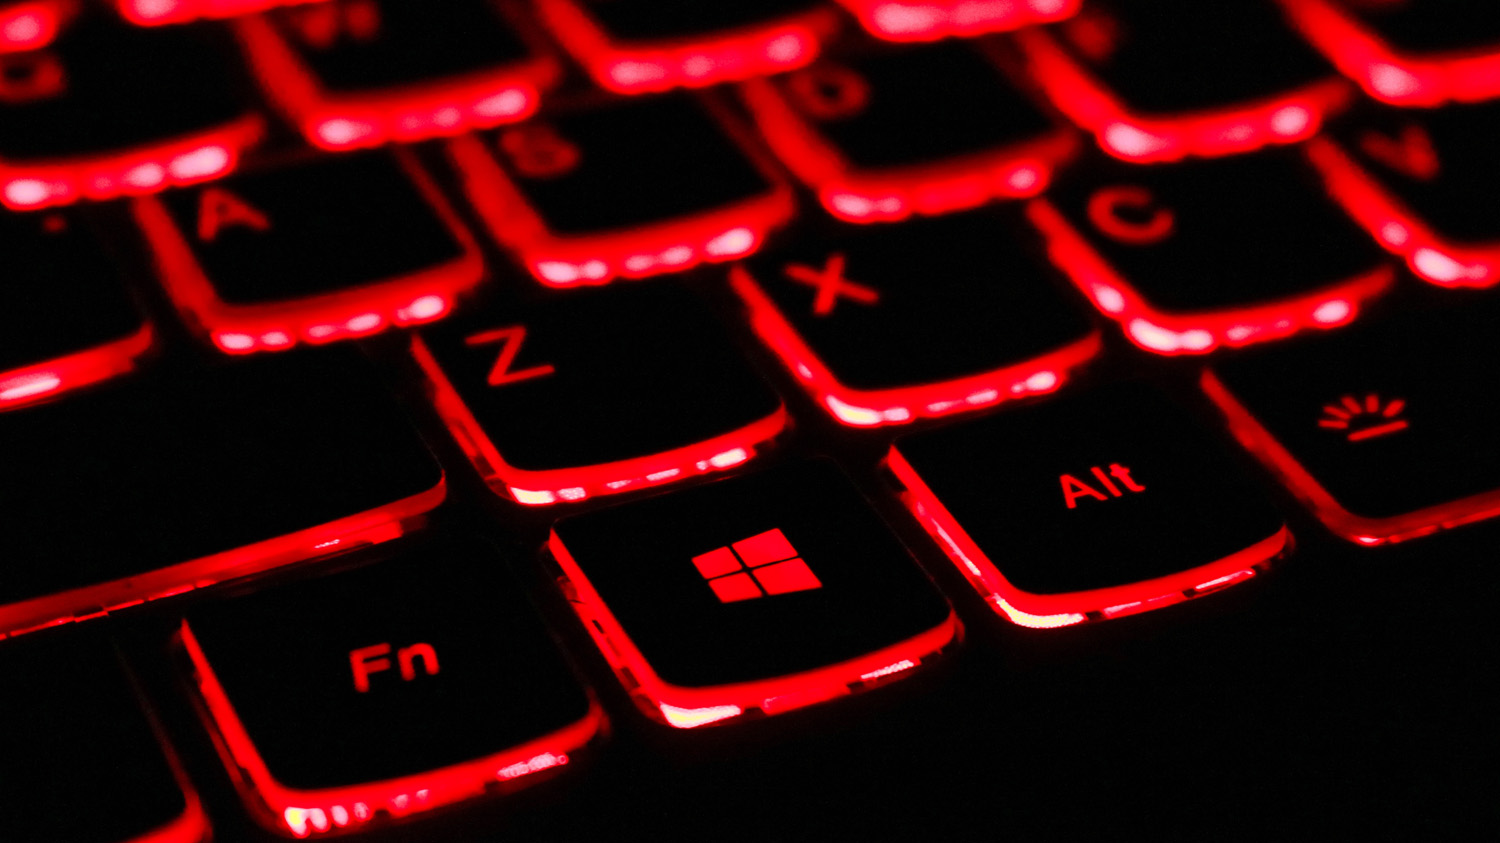 Närbild på tangentbord som har rött ljussken under knapparna. 